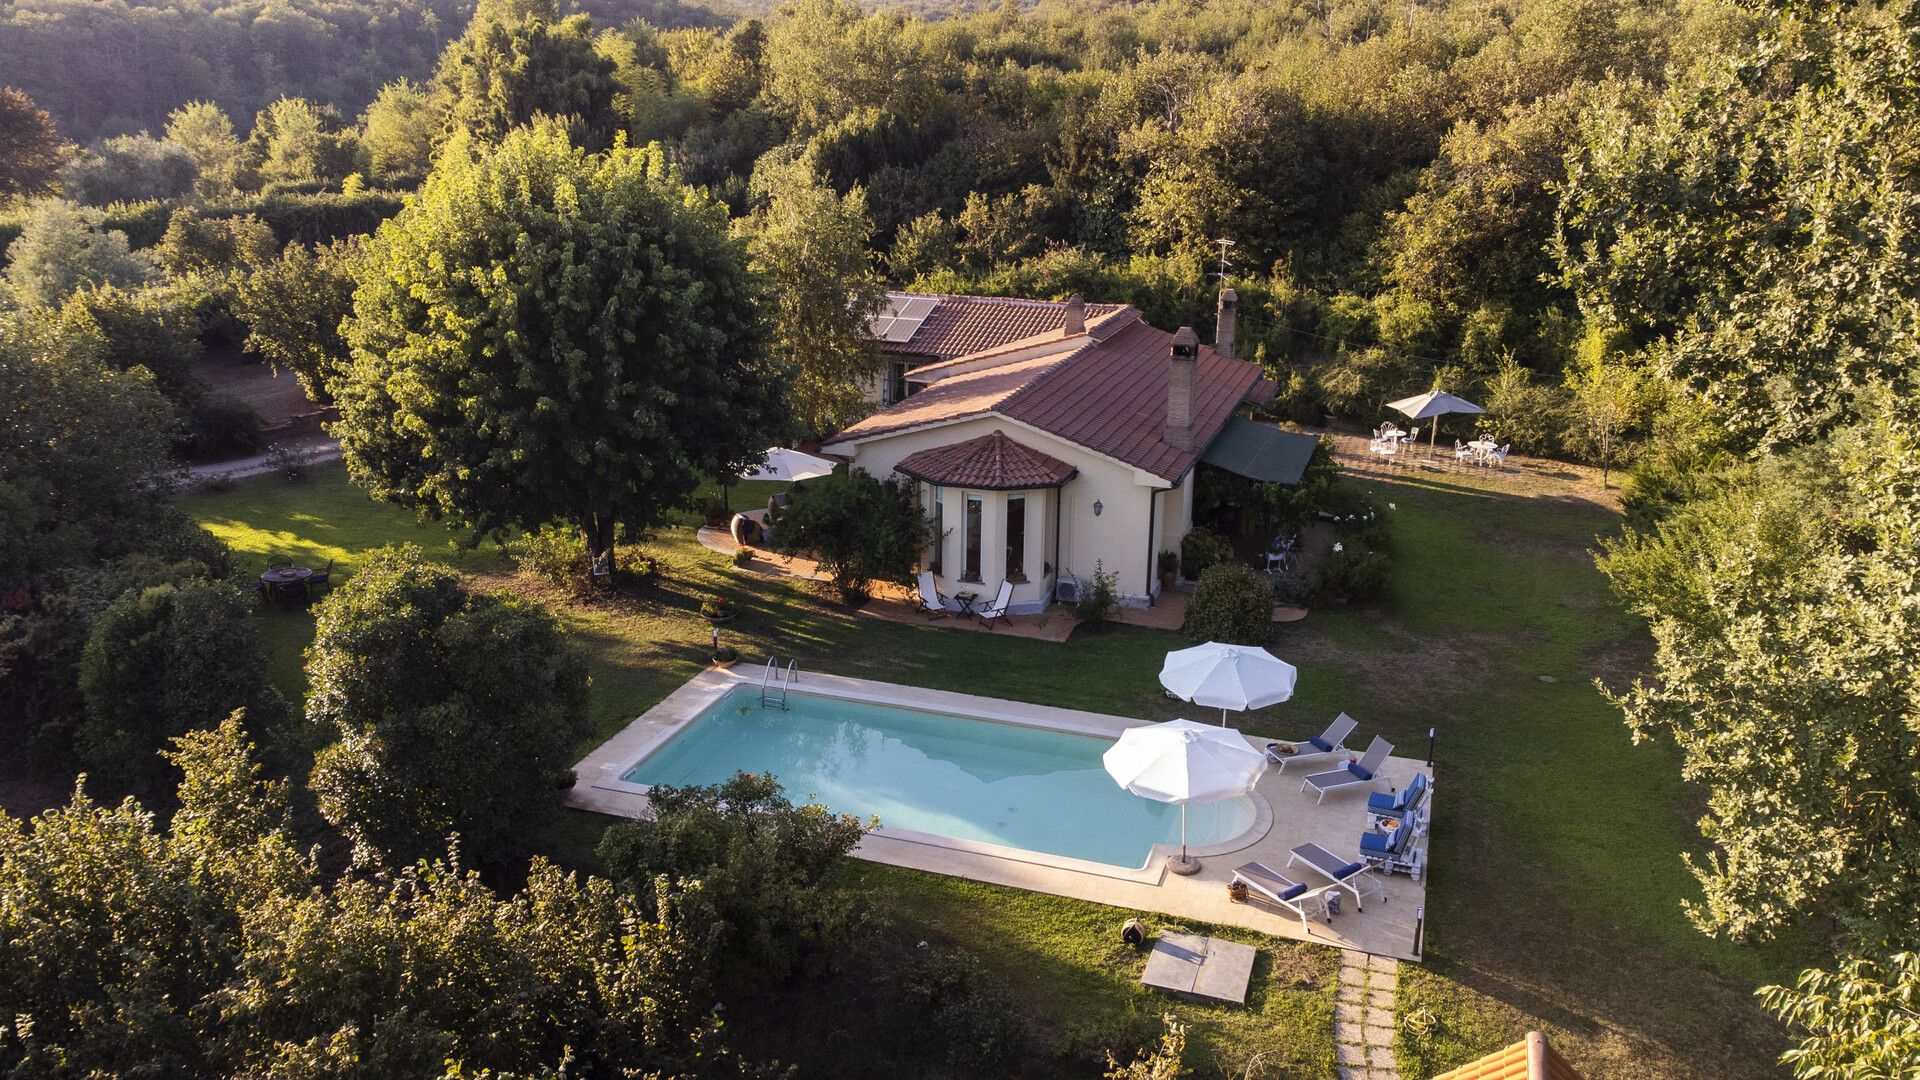 Affitto villa in zona tranquilla Capranica Lazio